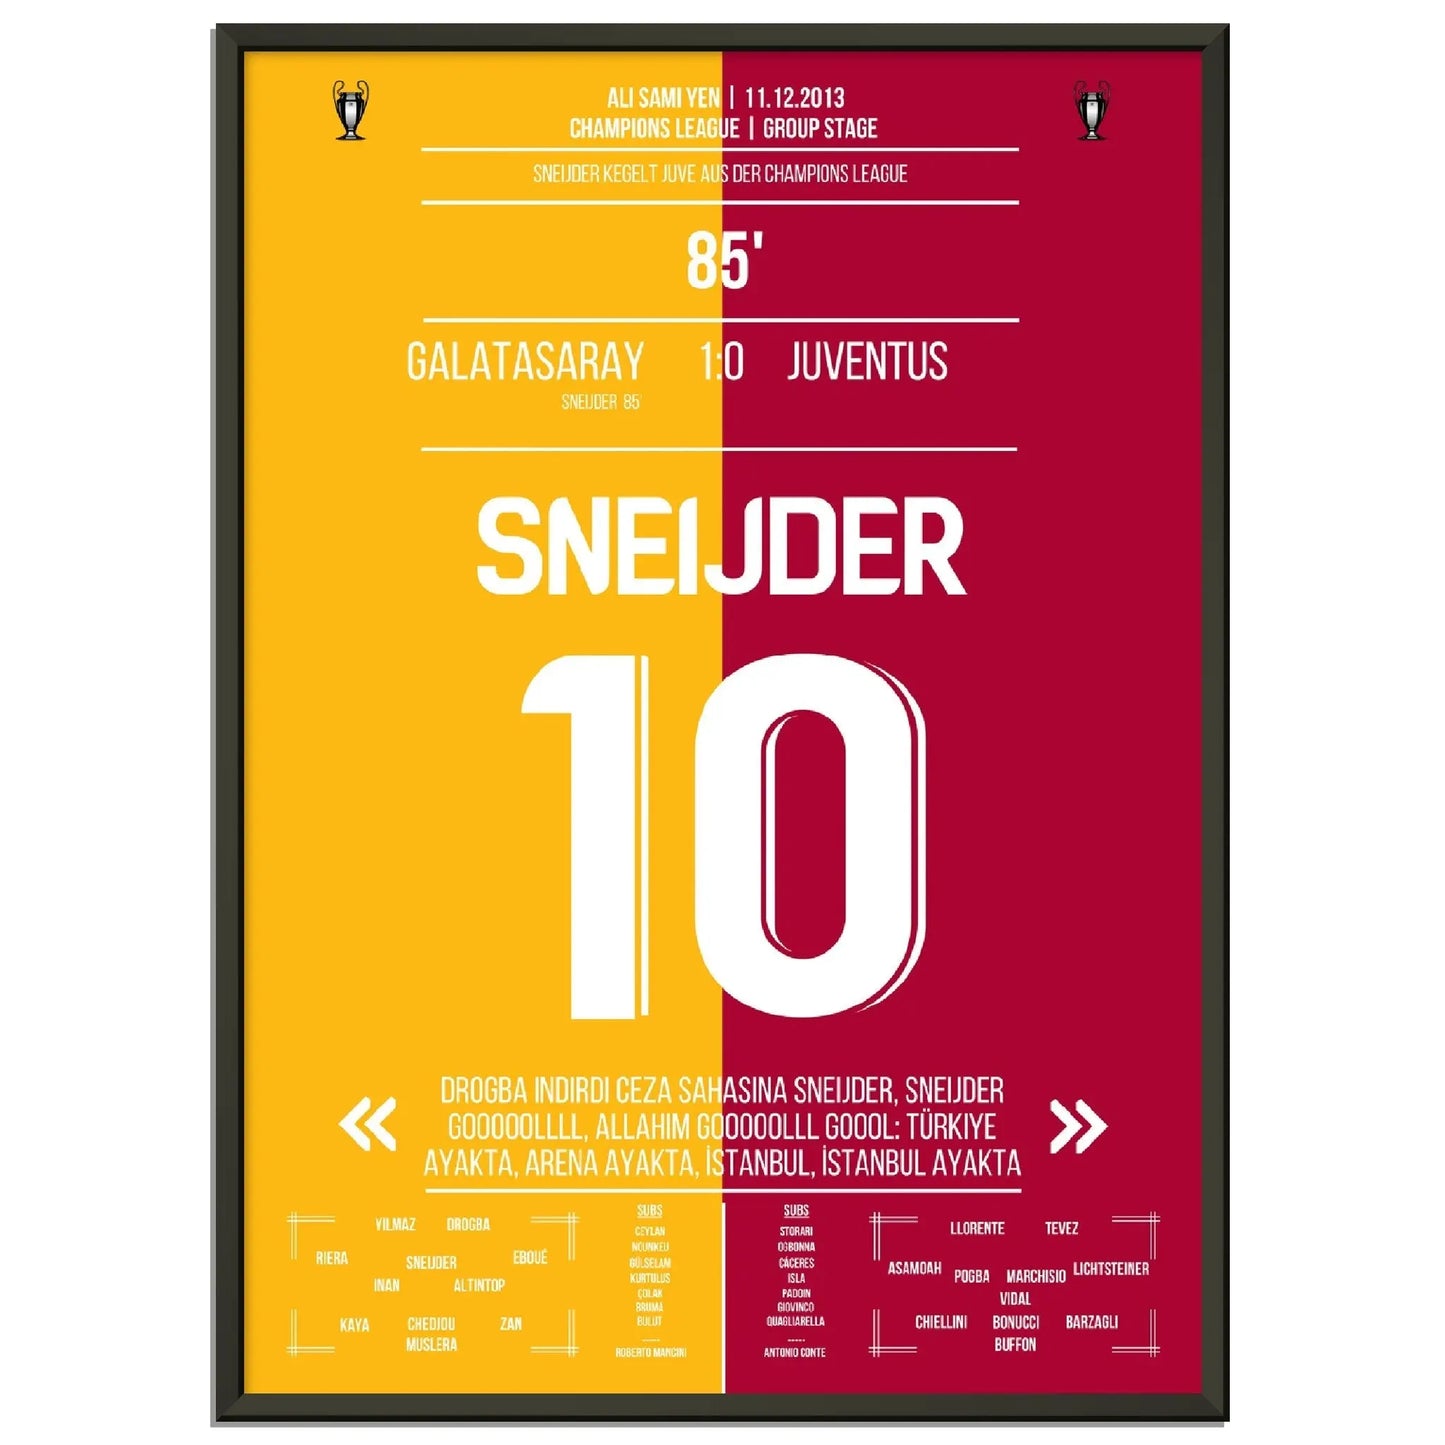 Sneijder macht die Sensation perfekt! Galatasaray wirft Juventus aus der Champions League in 2013 